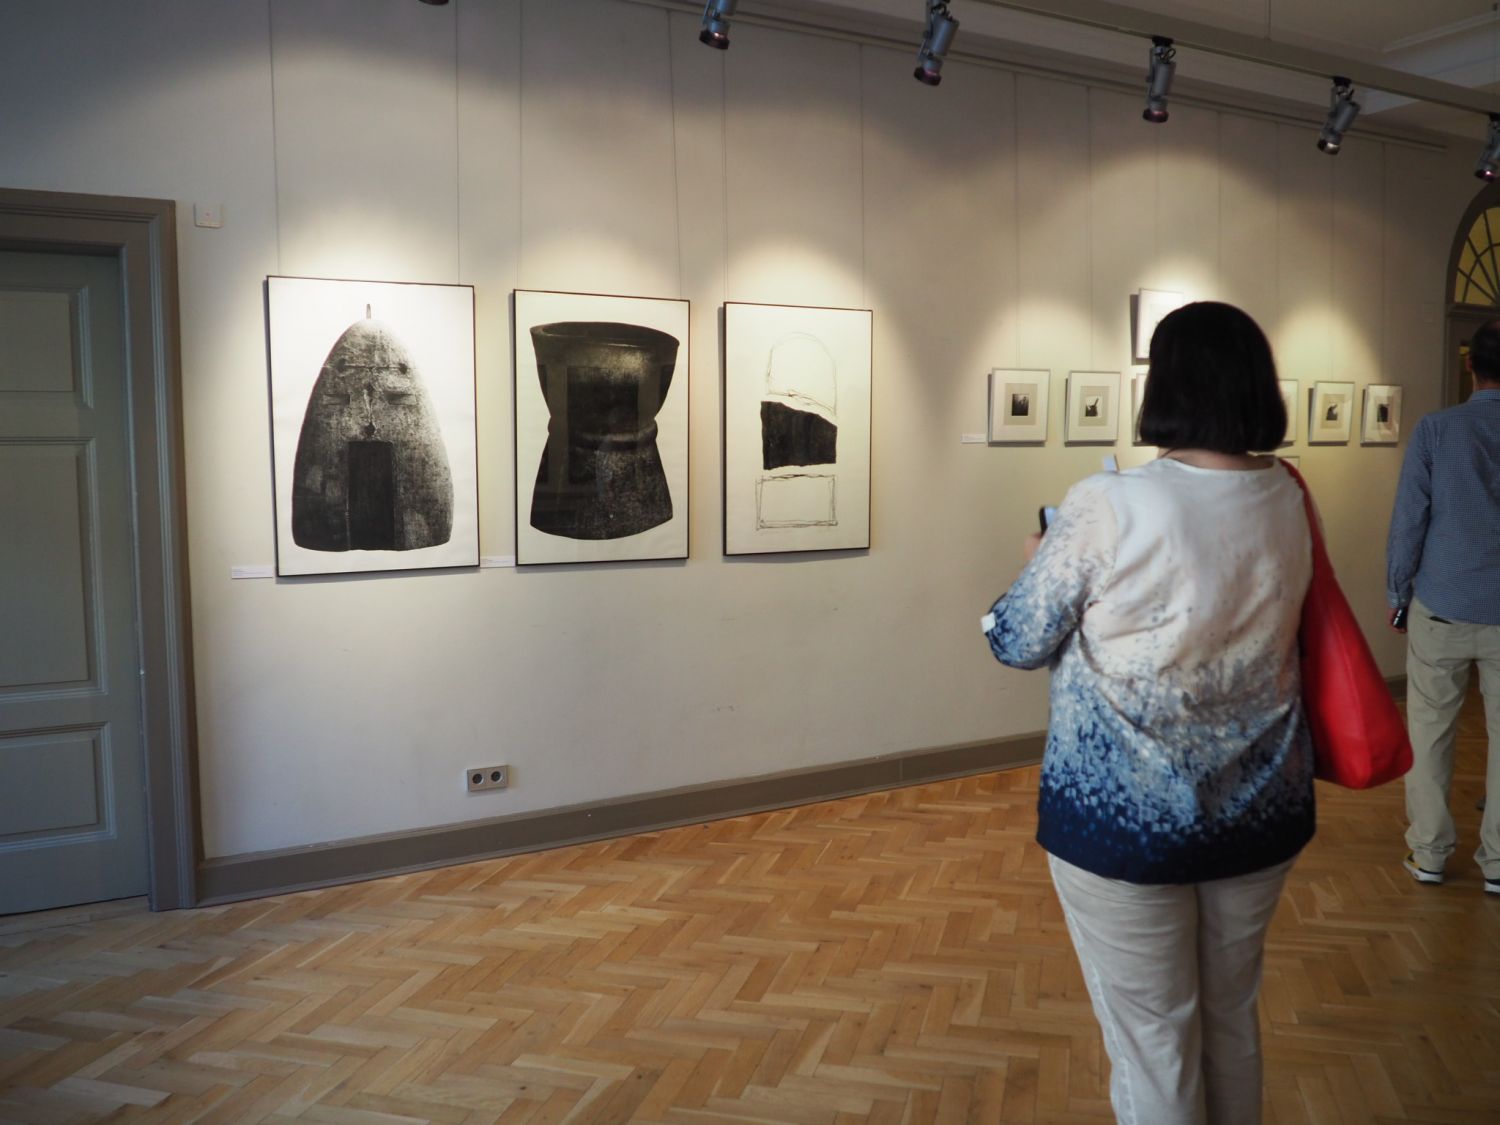 Na zdjęciu widać ścianę sali wystawowej na której wiszą trzy duże obrazy i kilka małych prezentujących sztukę współczesną. Na pierwszym planie stoi tyłem do obiektywu kobieta przyglądająca się pracom.